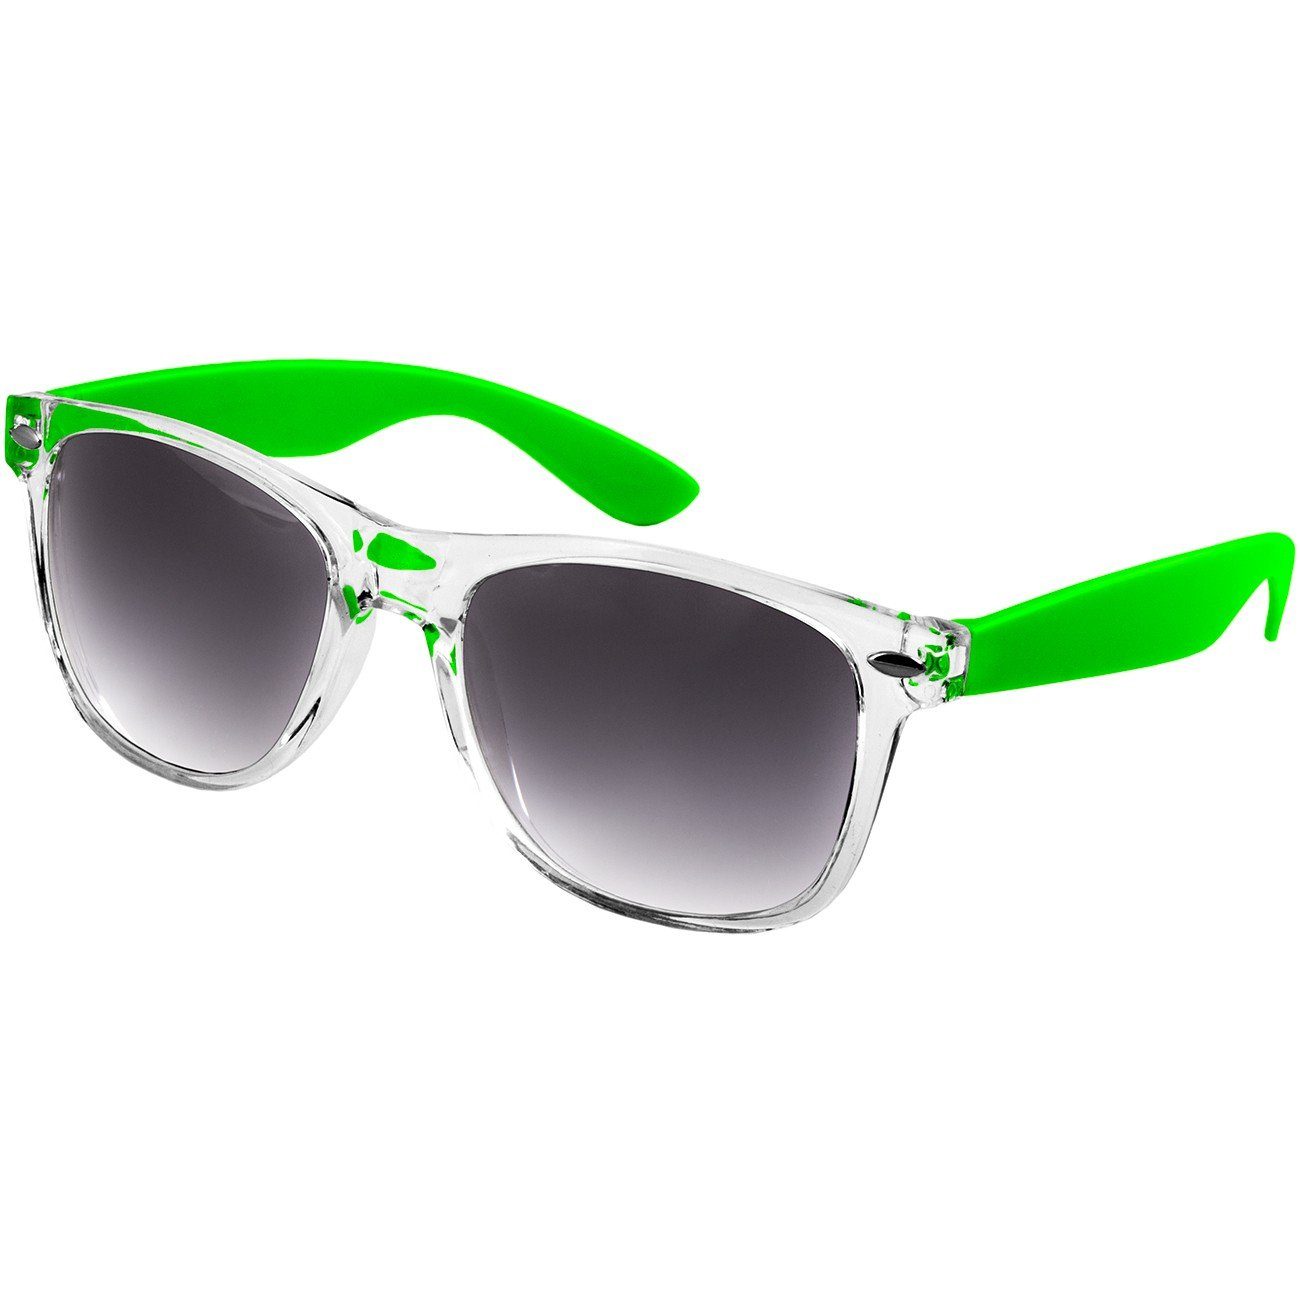 Damen getönt Caspar RETRO / SG017 schwarz Sonnenbrille Designbrille grün